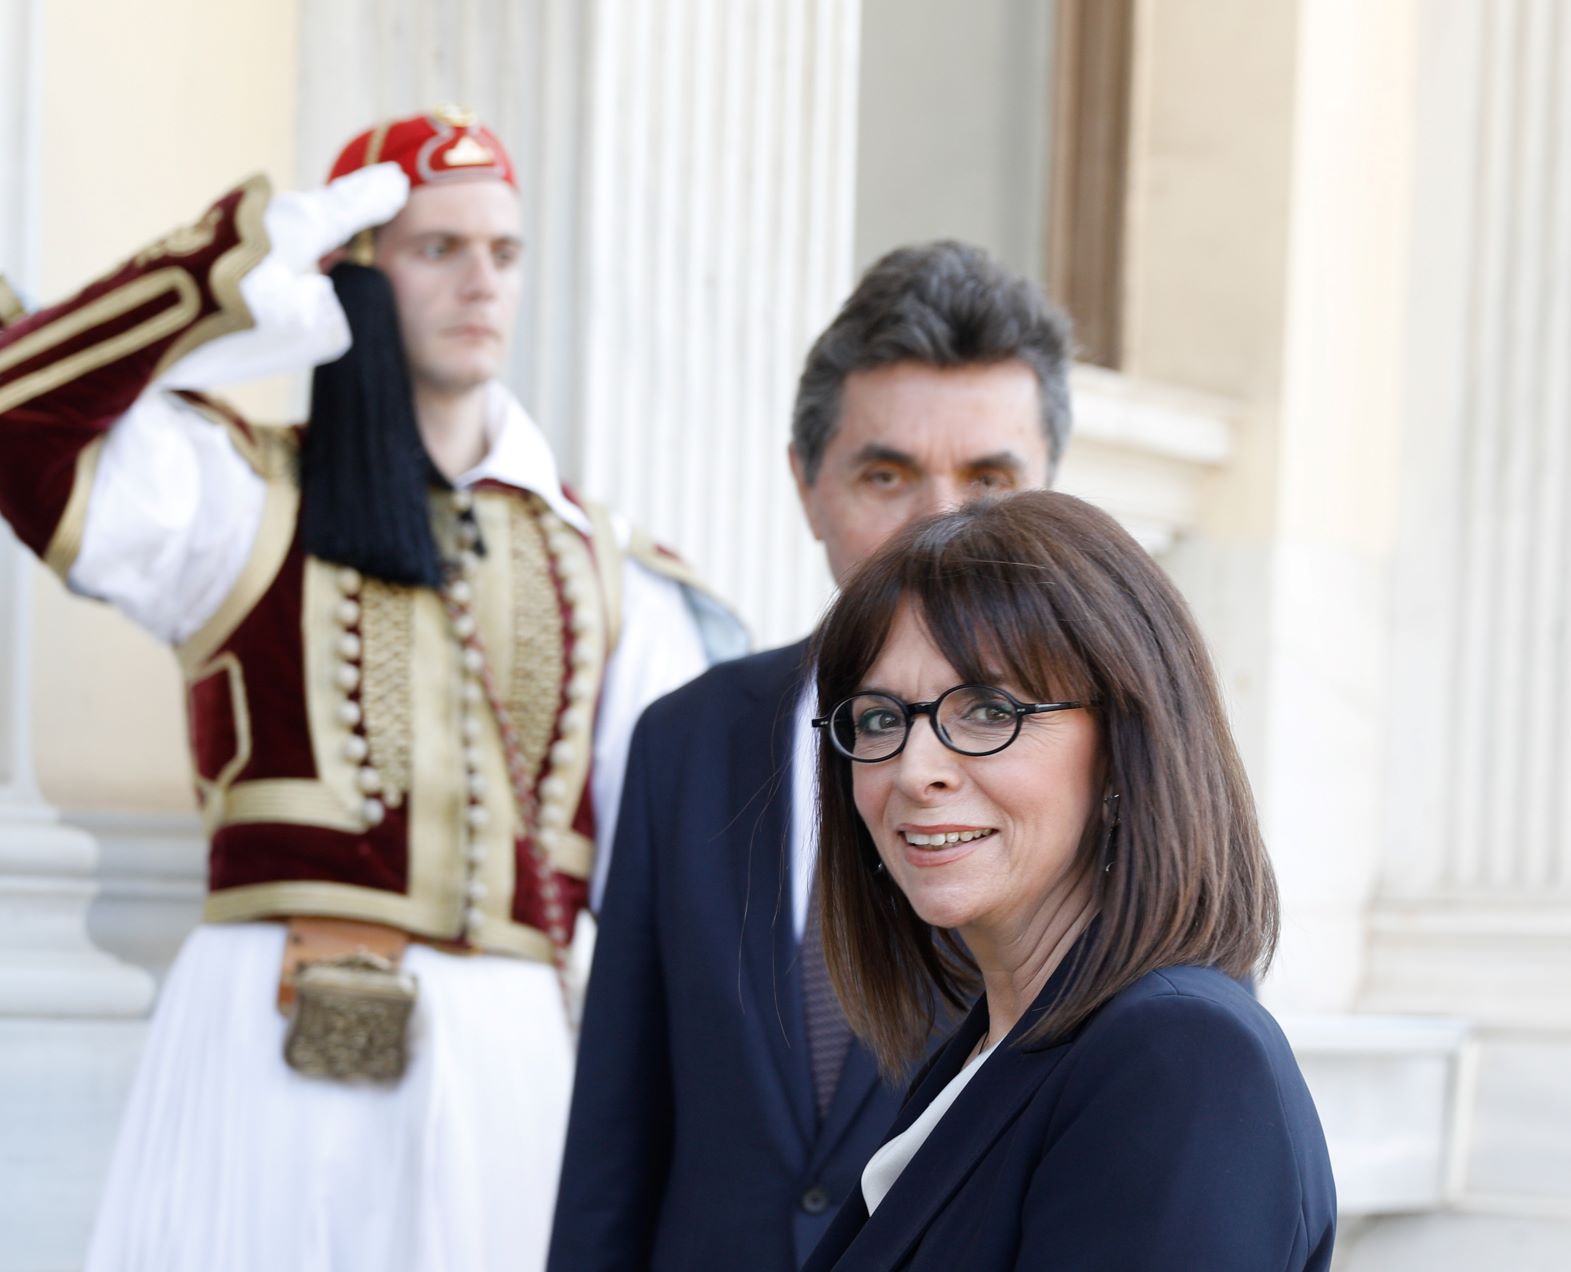 Tι φόρεσε στην Ορκωμοσία της η πρώτη γυναίκα Πρόεδρος της Δημοκρατίας στην Ελλάδα;